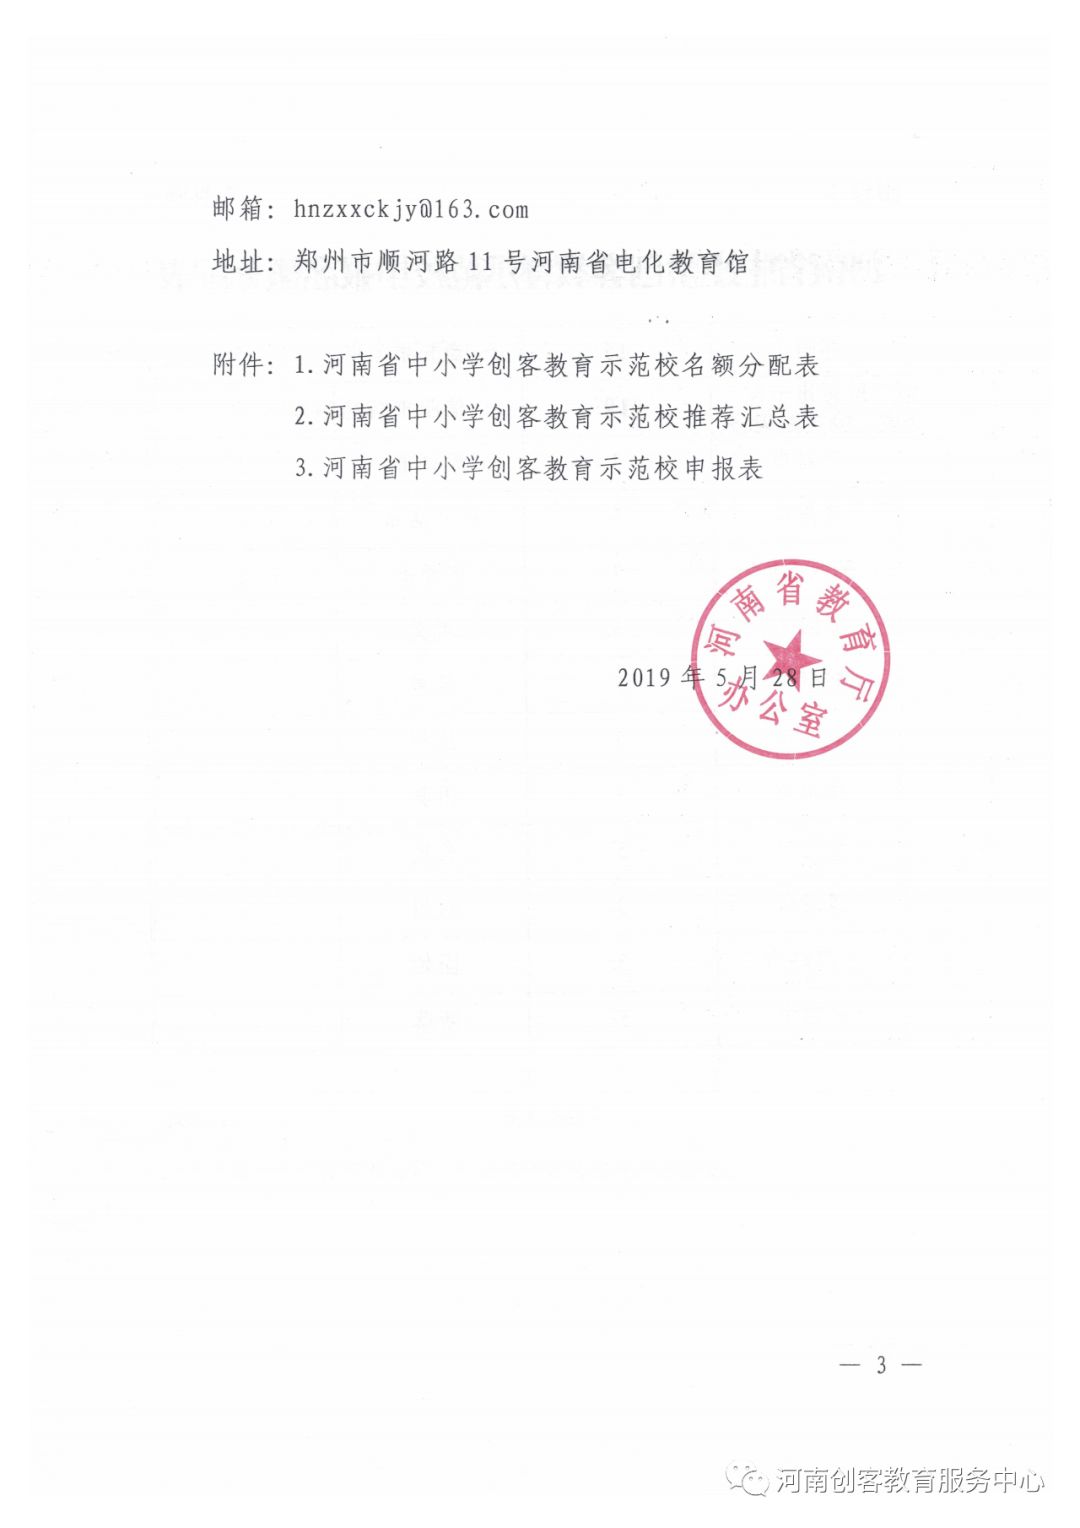 河南省教育厅办公室关于申报第二批河南省中小学创客教育示范校的通知